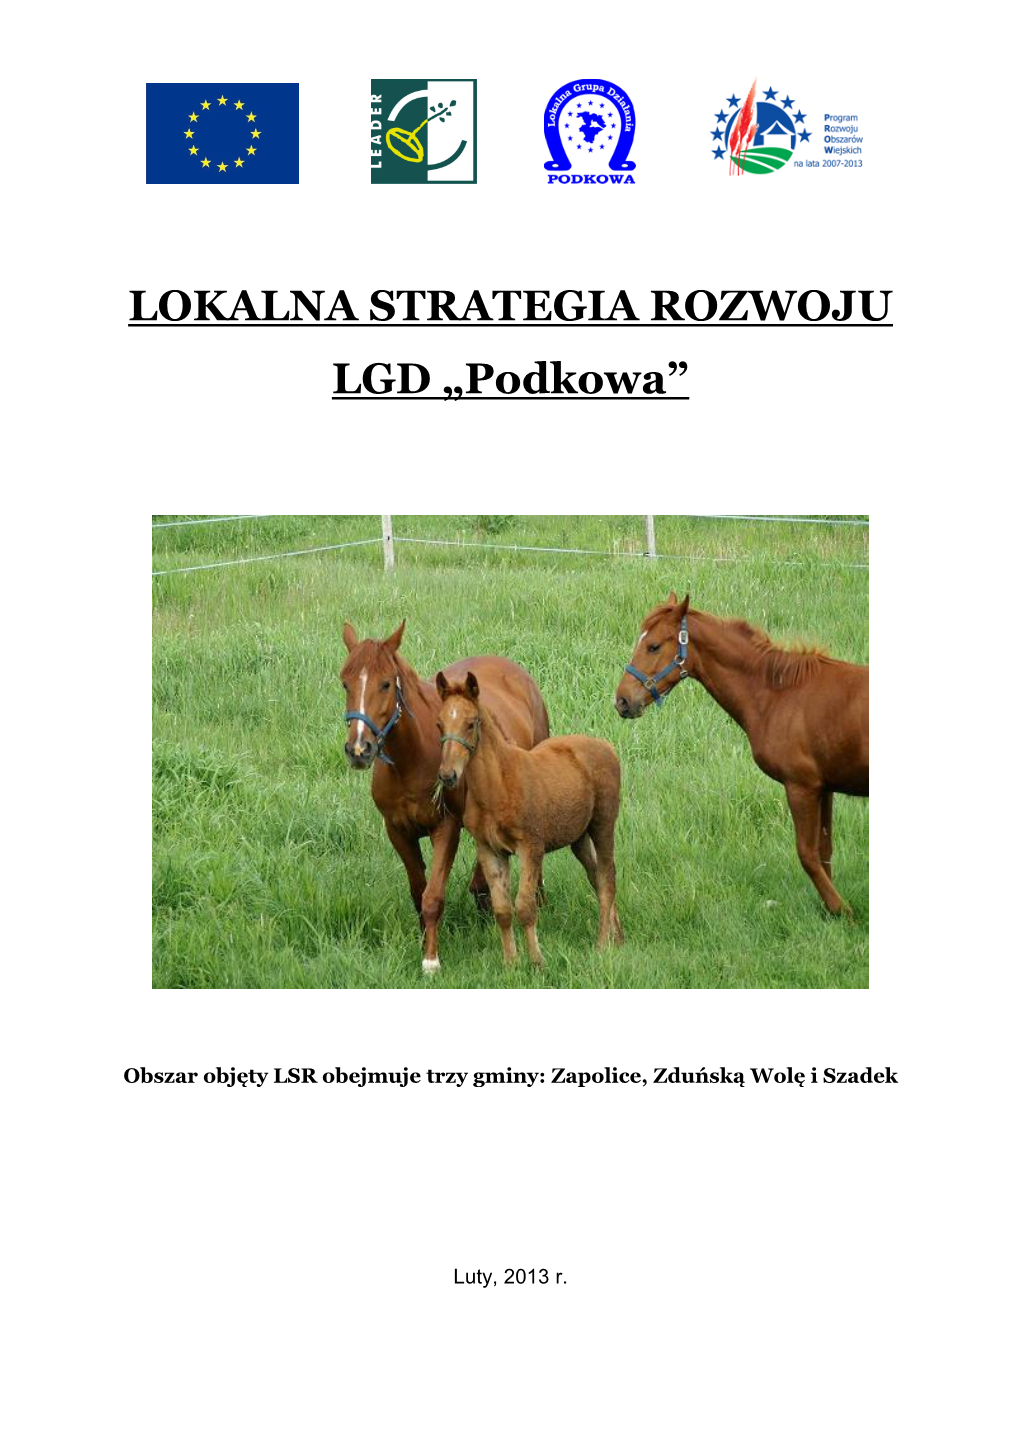 Lokalna Strategia Rozwoju LGD „Podkowa” (Zduńska Wola, Zapolice)